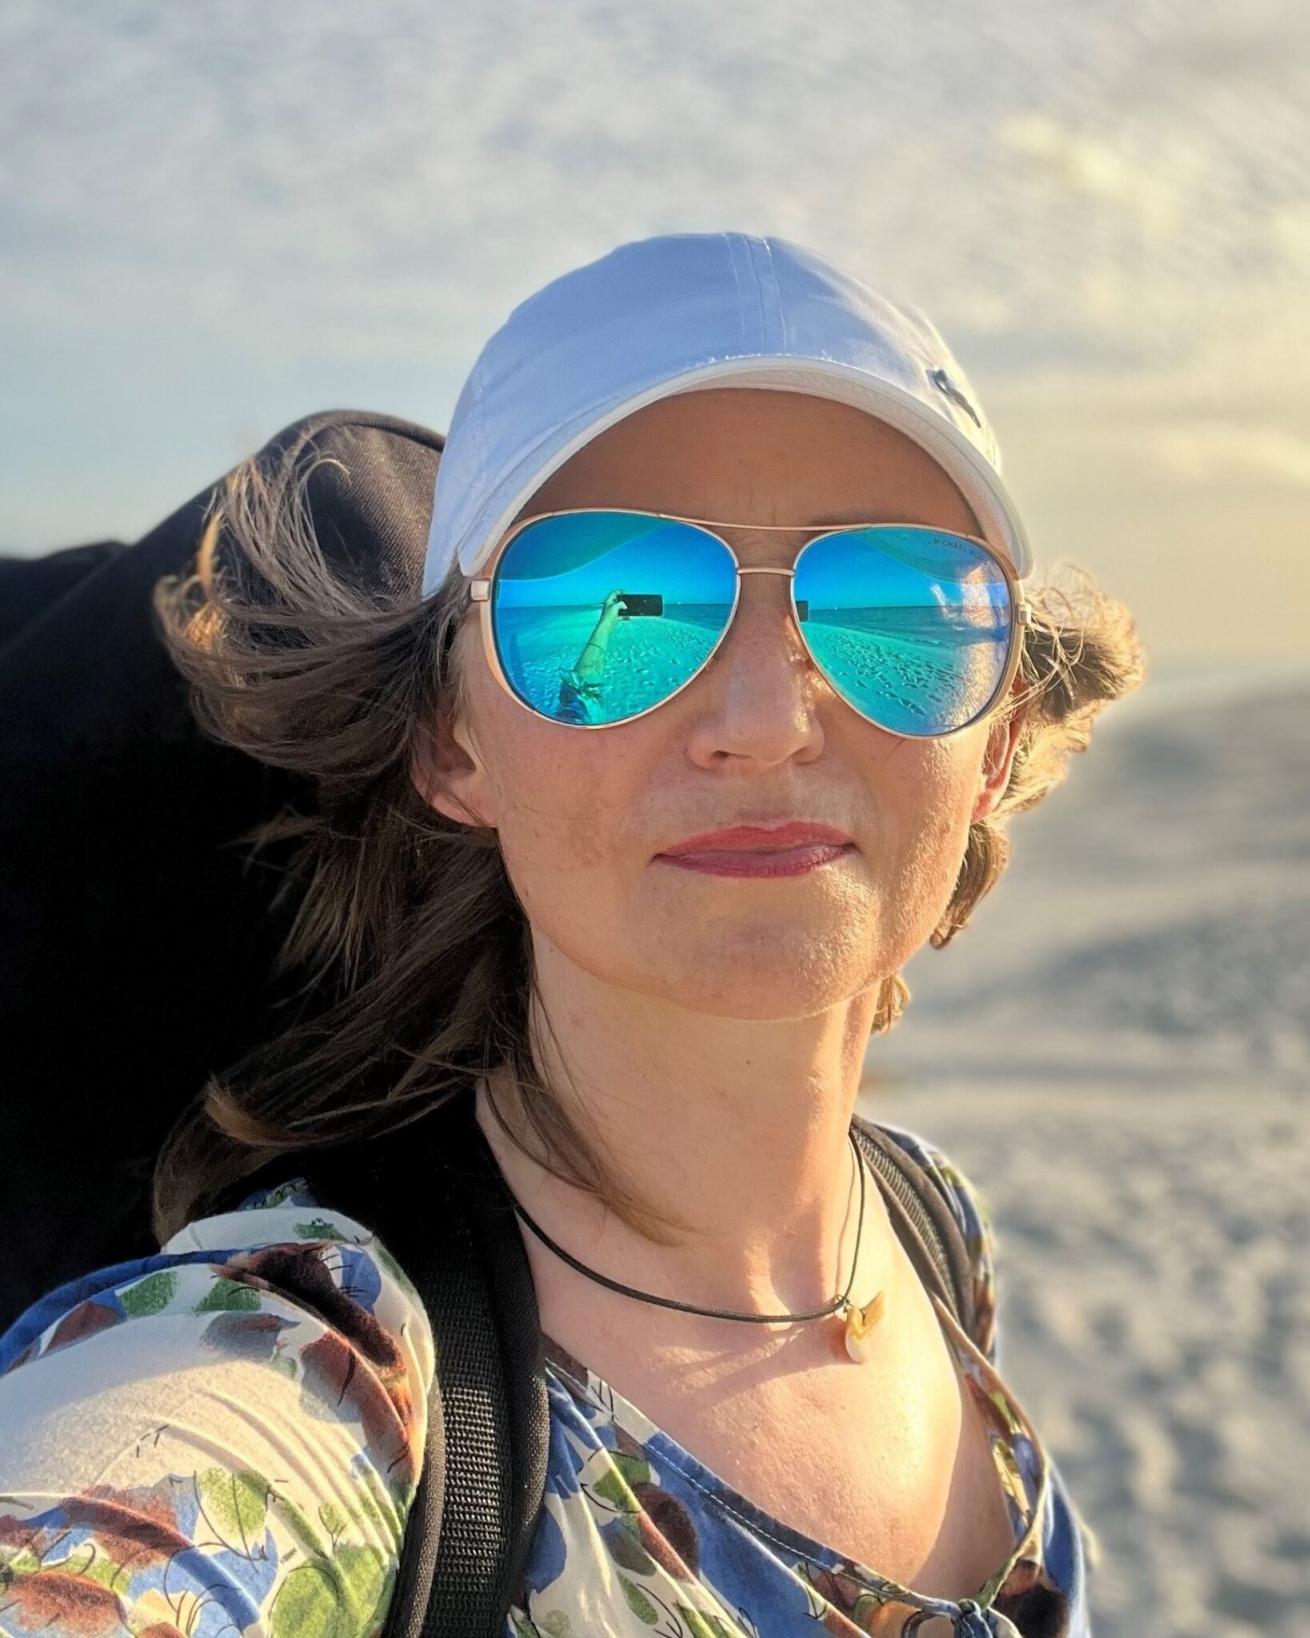 Beach selfie of a woman